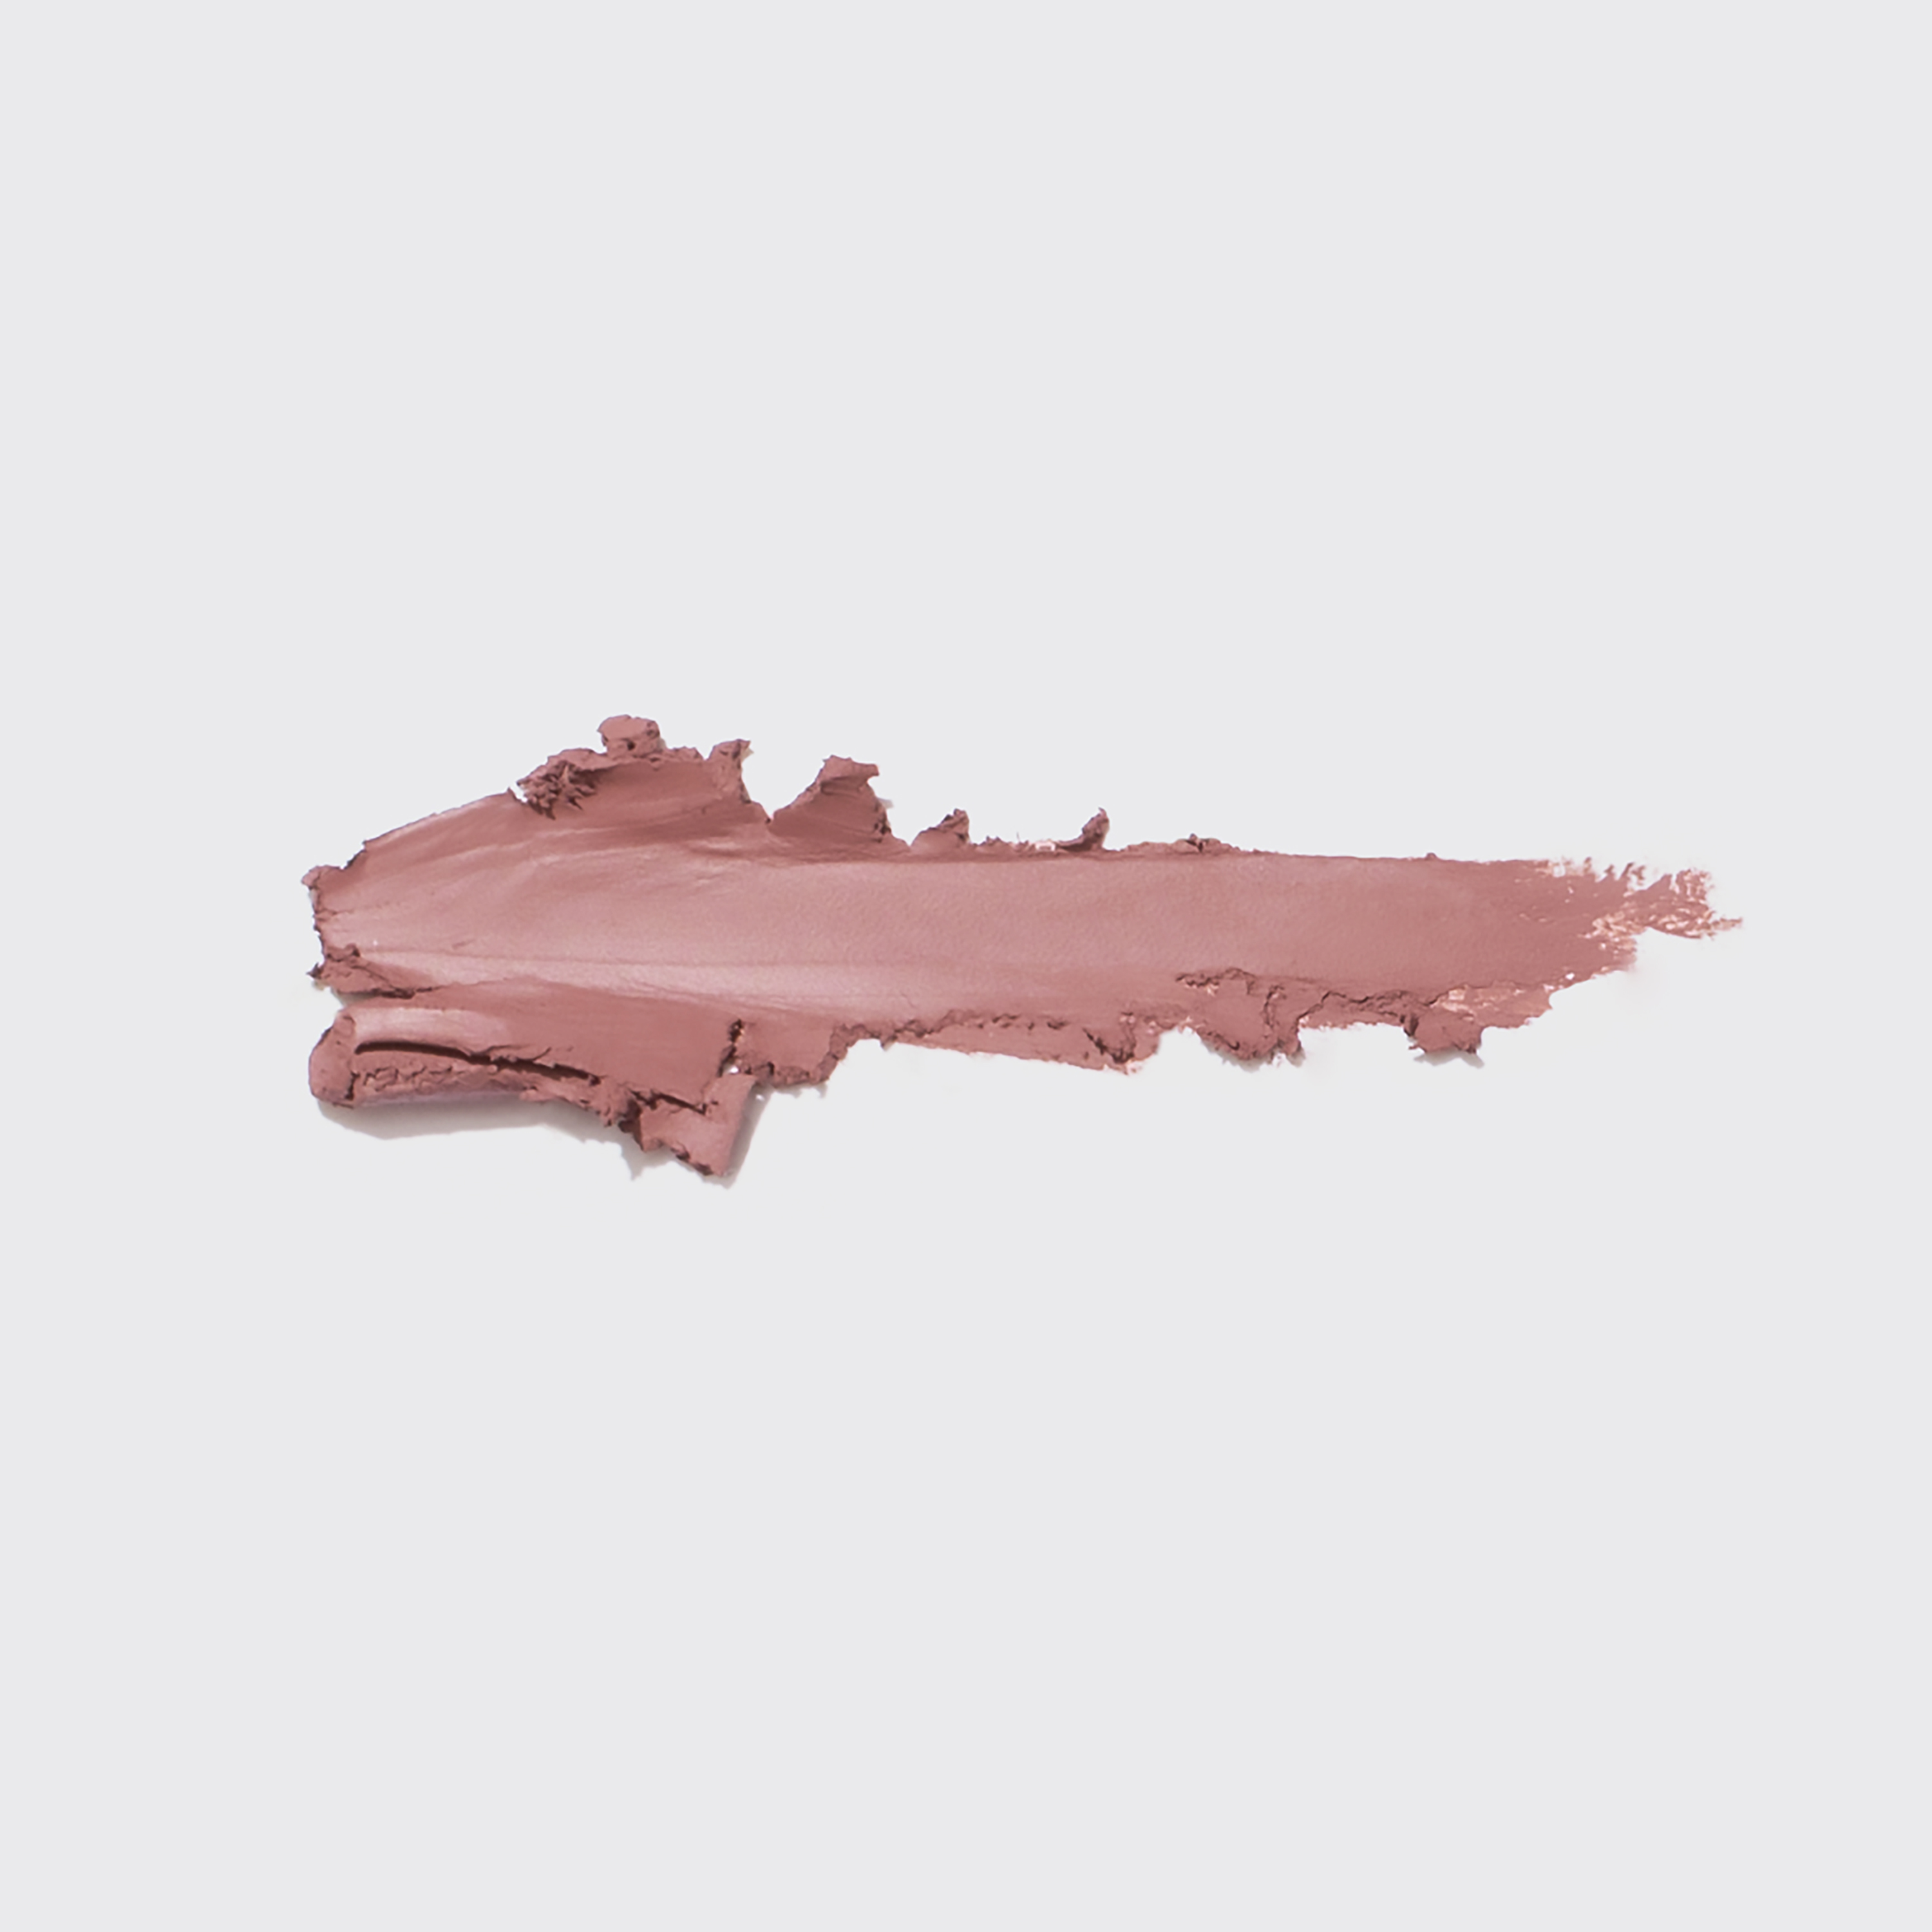 Vivienne Sabo - Long Lasting Gel Lipliner 07 - brown pink